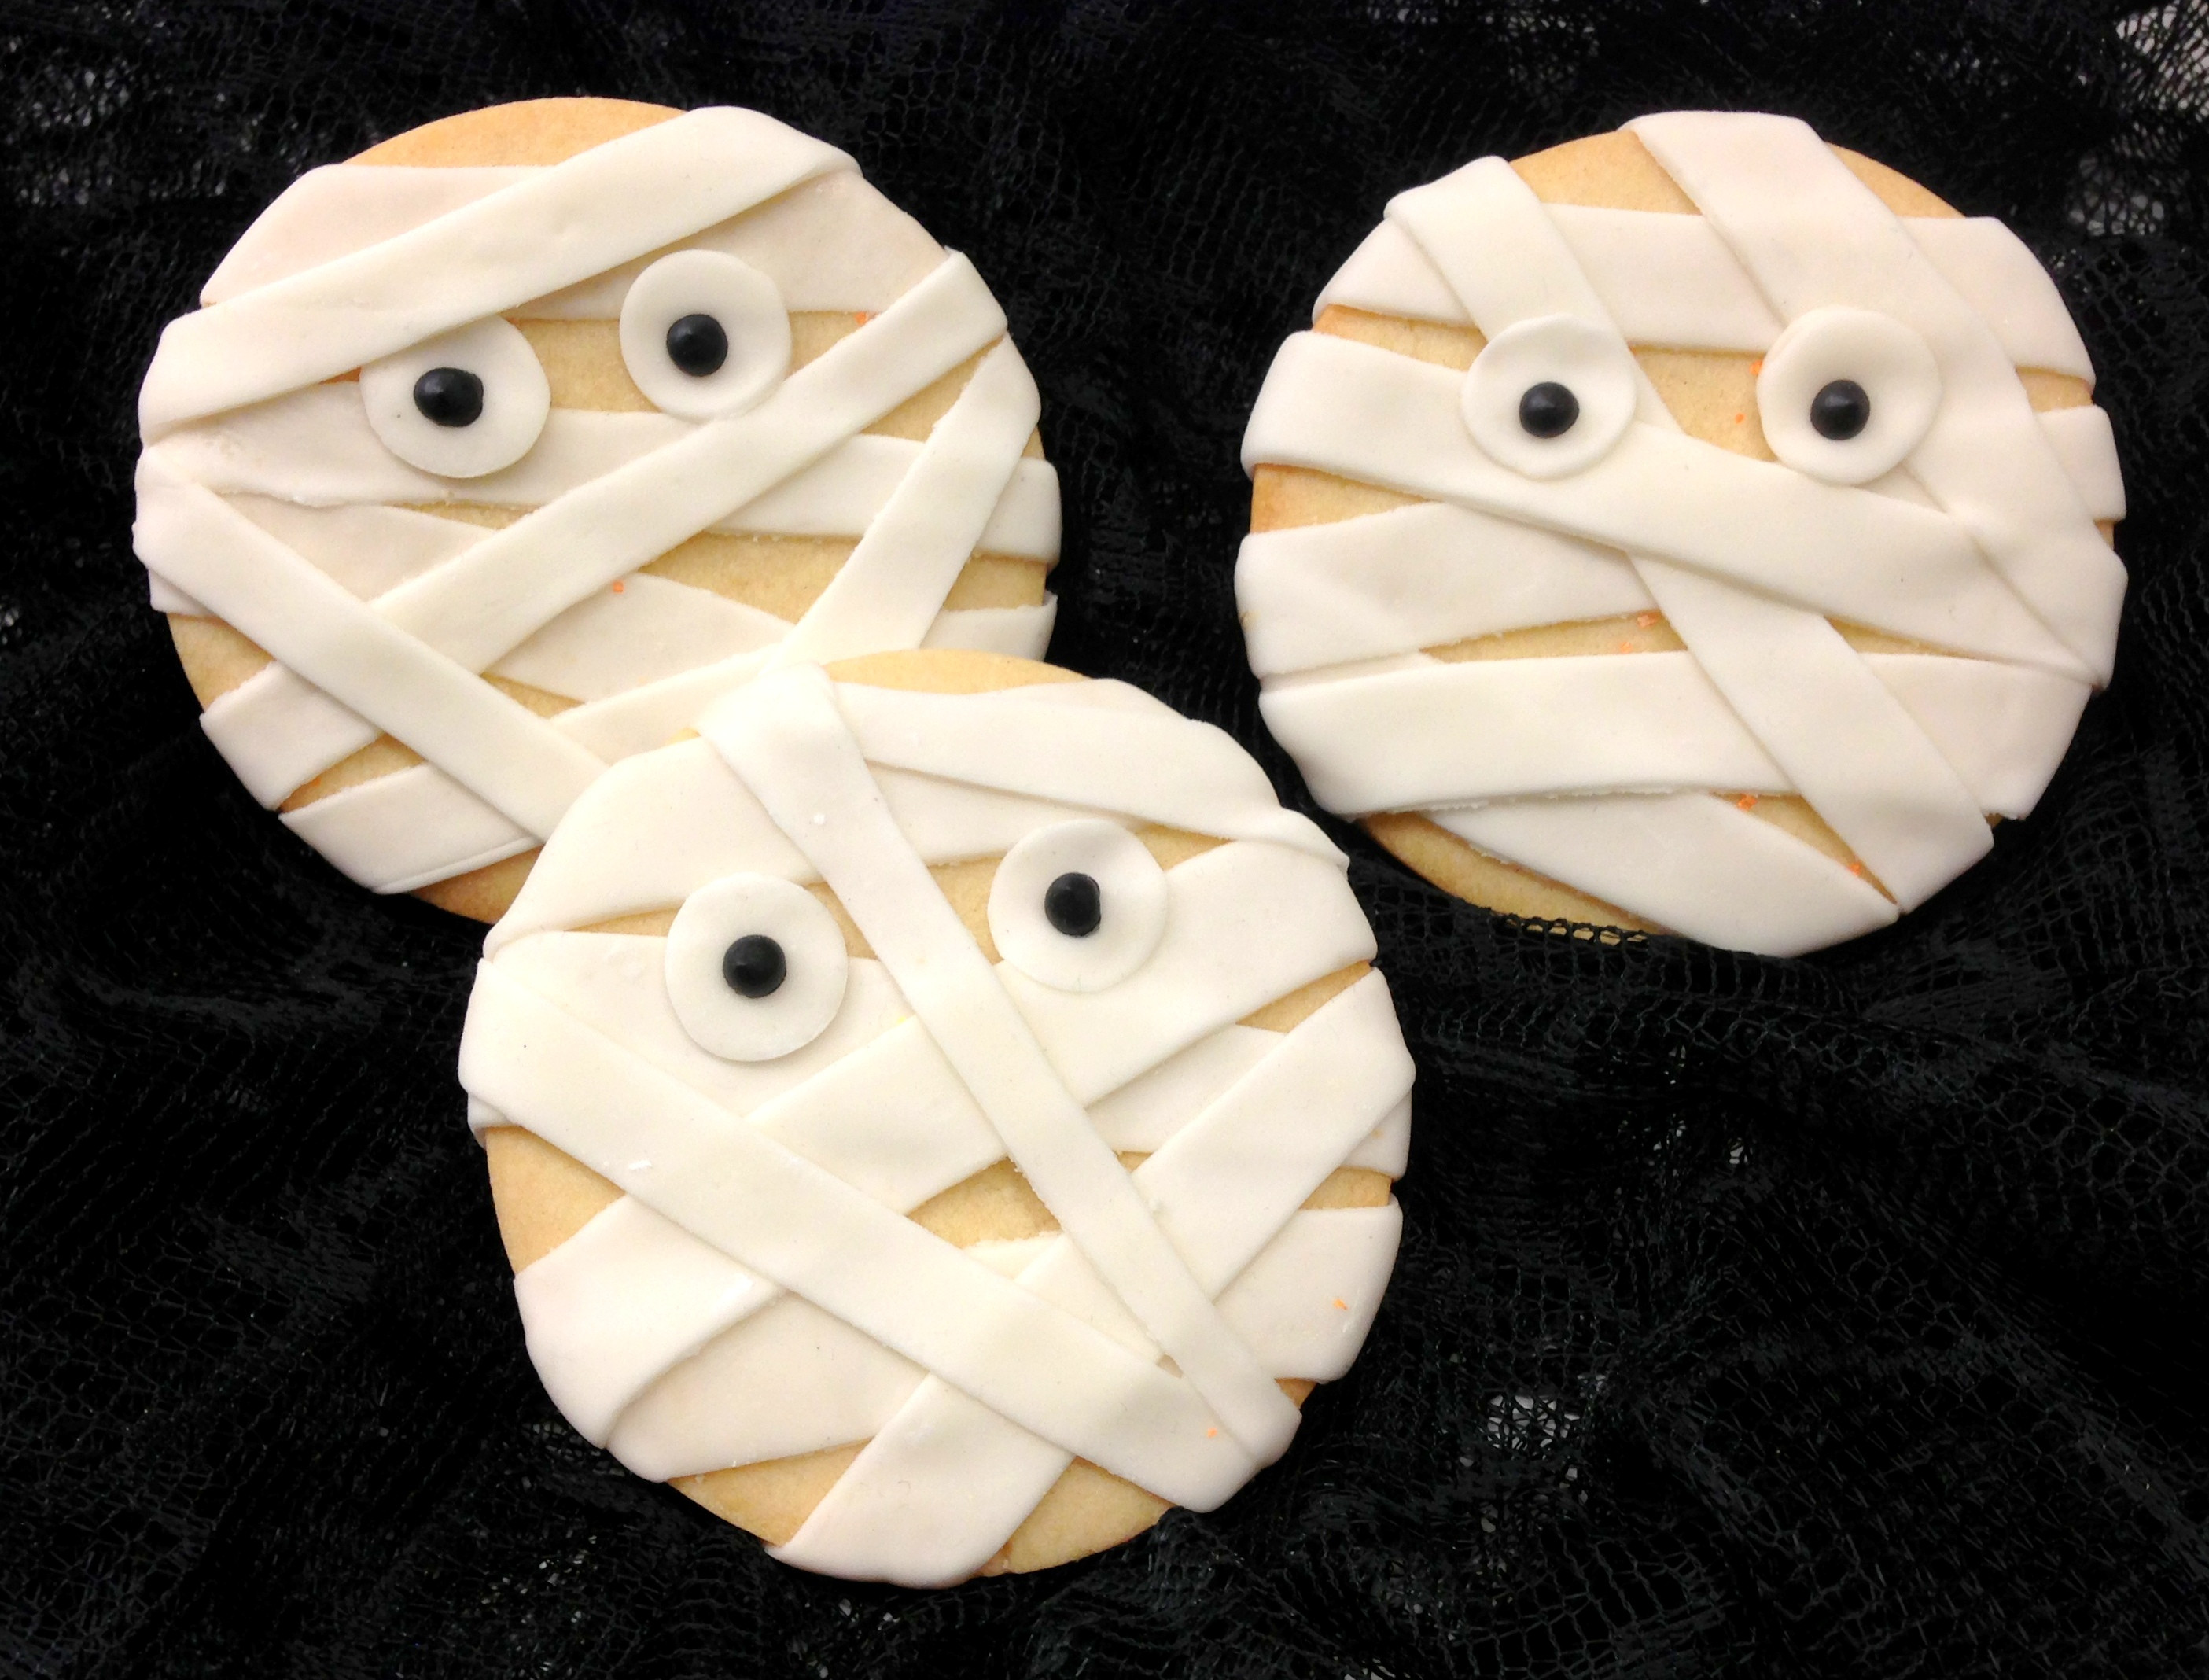 Mummy Cookies For Halloween
 HALLOWEEN DESSERTS